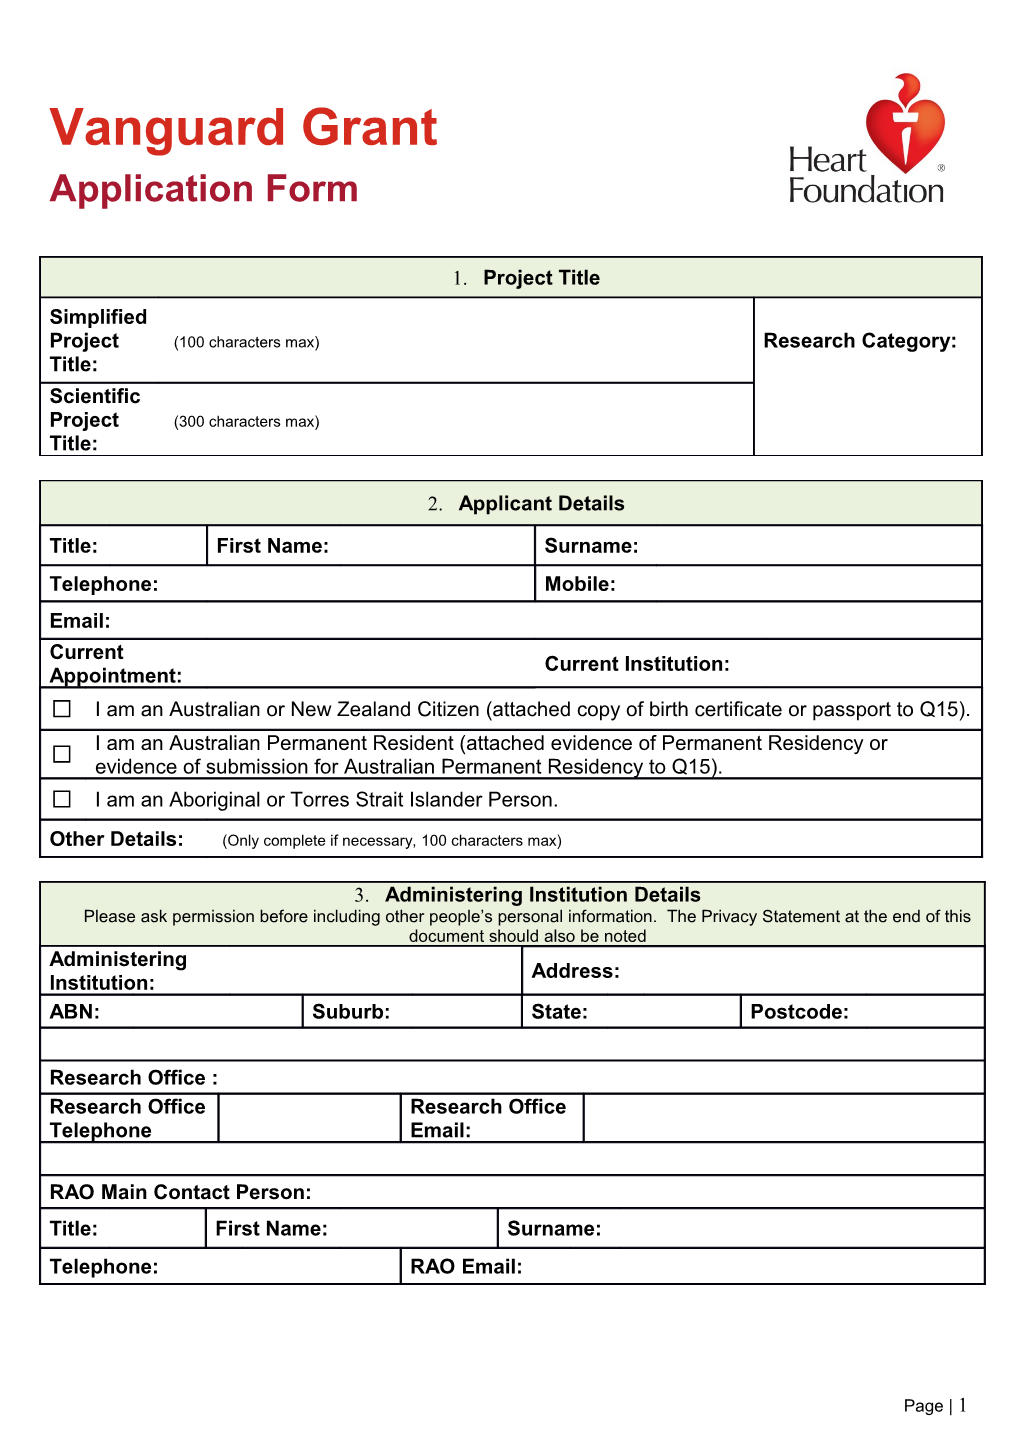 Vanguard Grants Application Form 2013